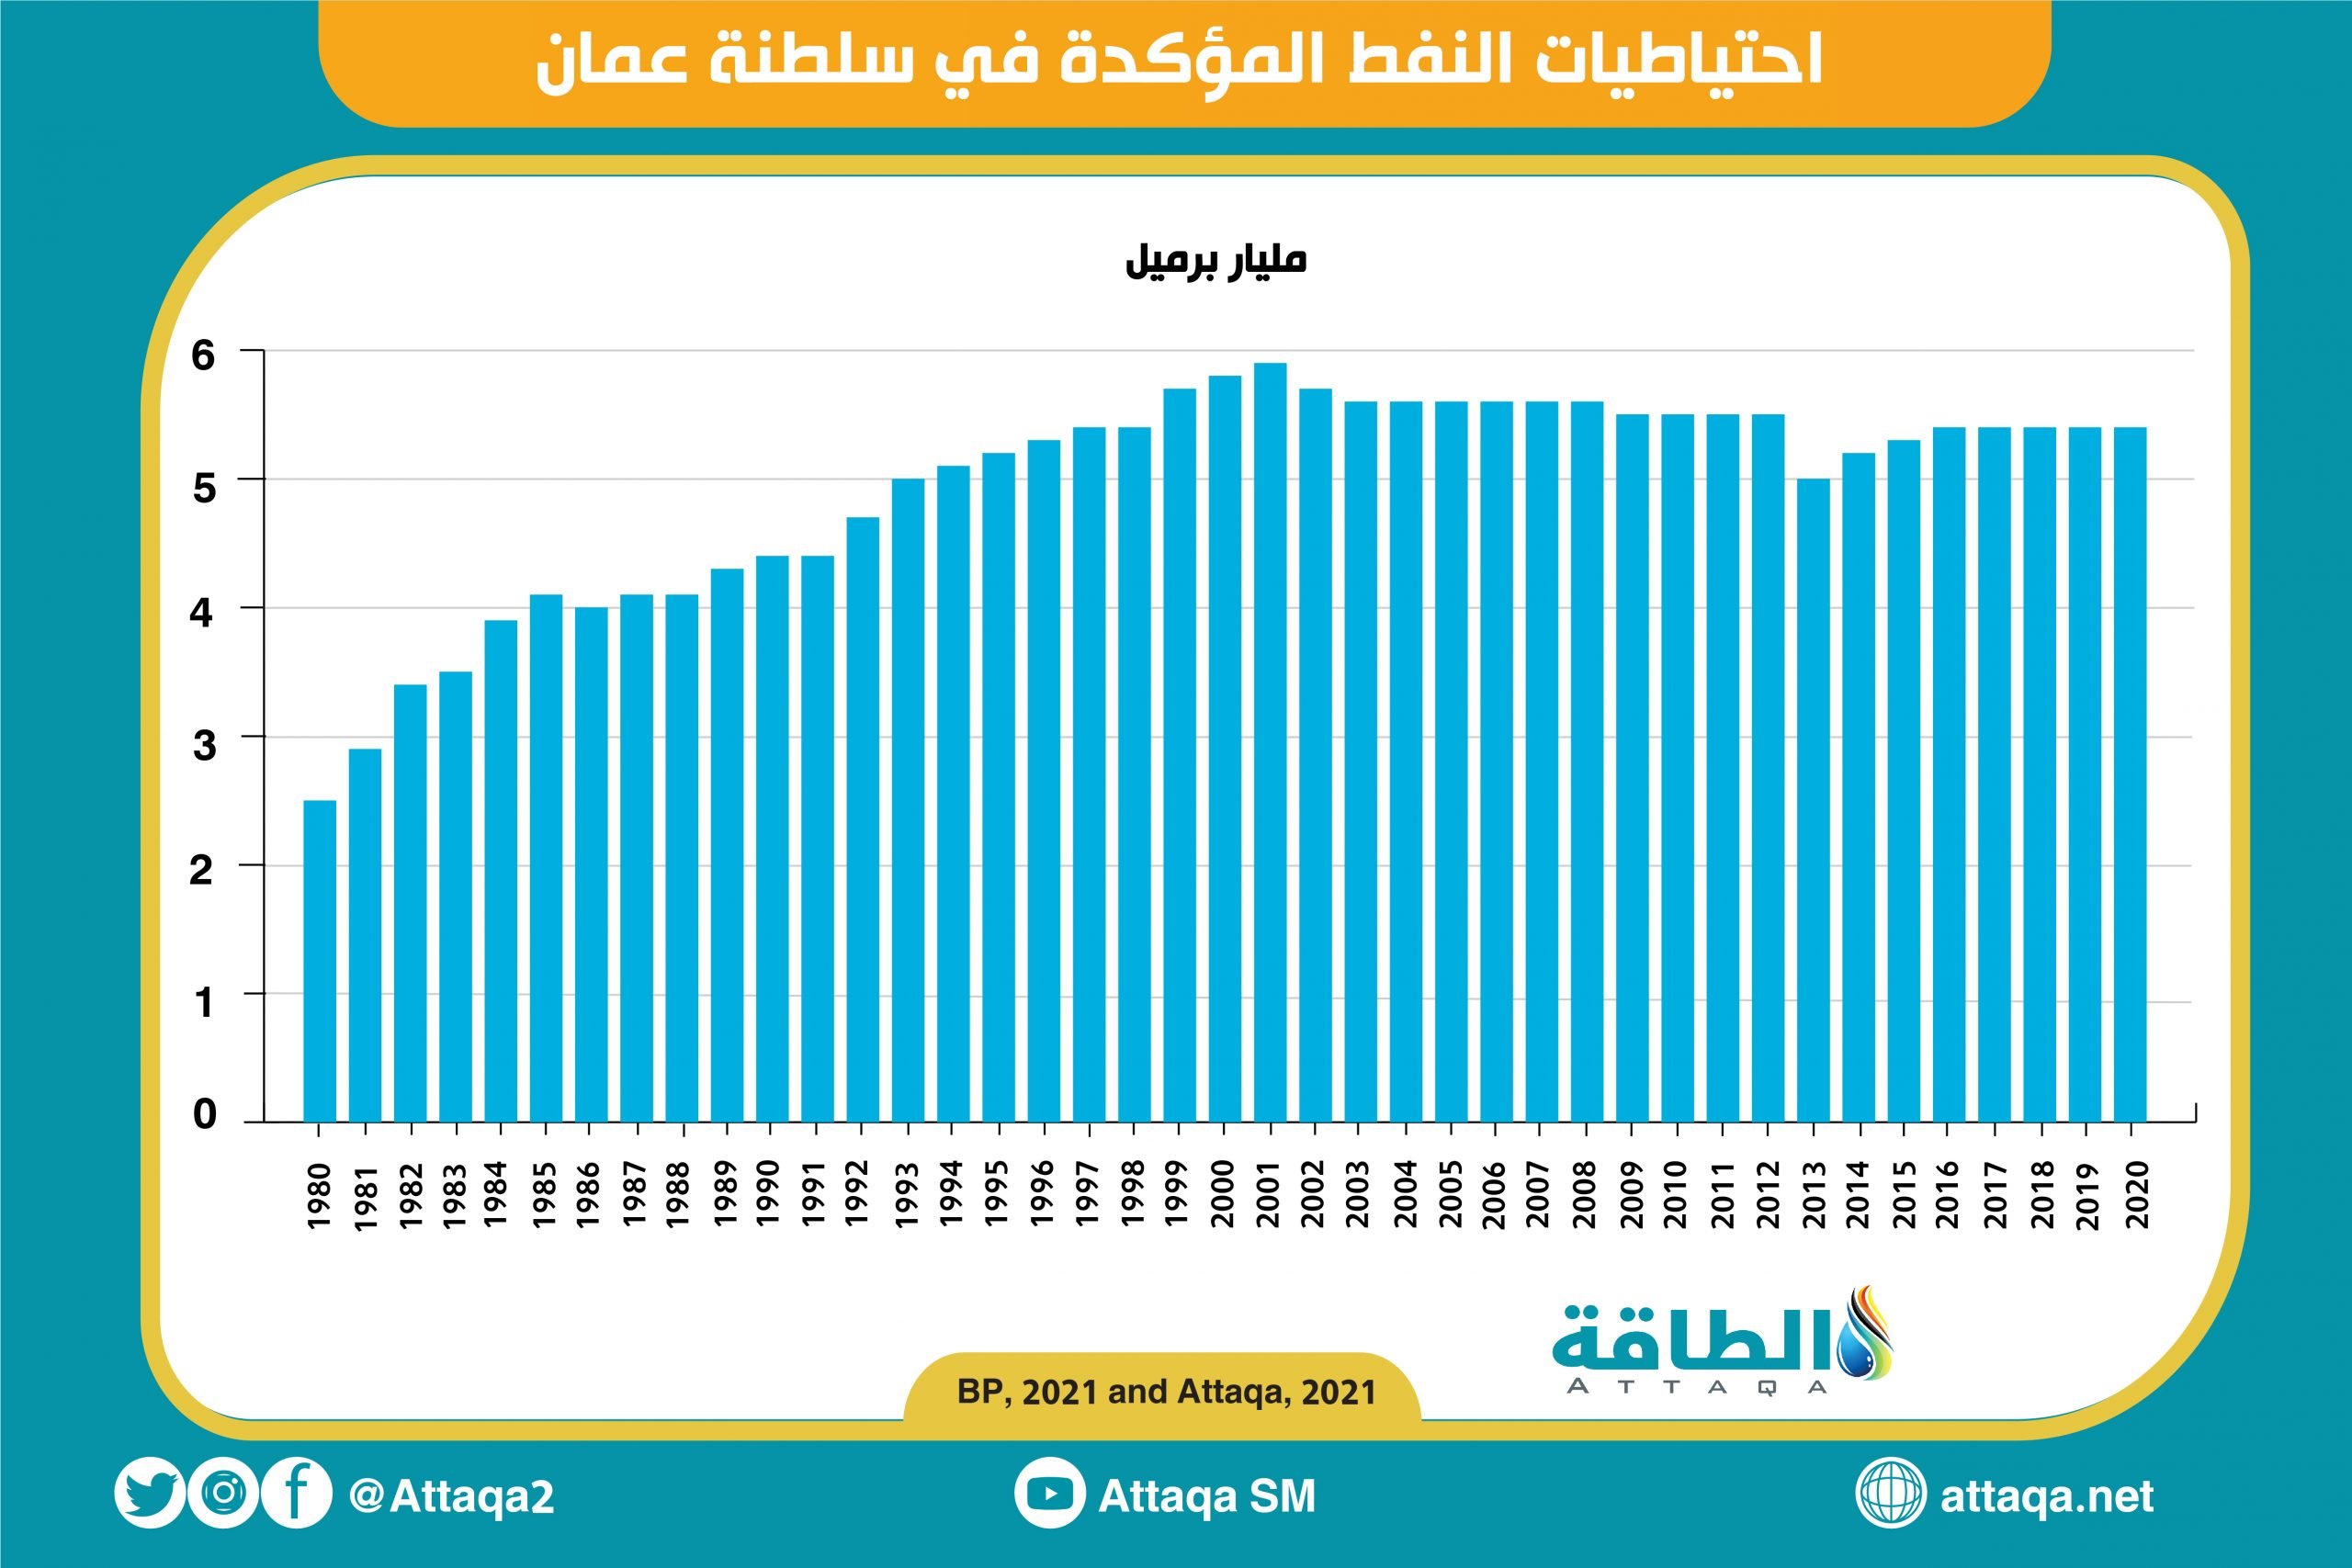 احتياطيات النفط - سلطنة عمان